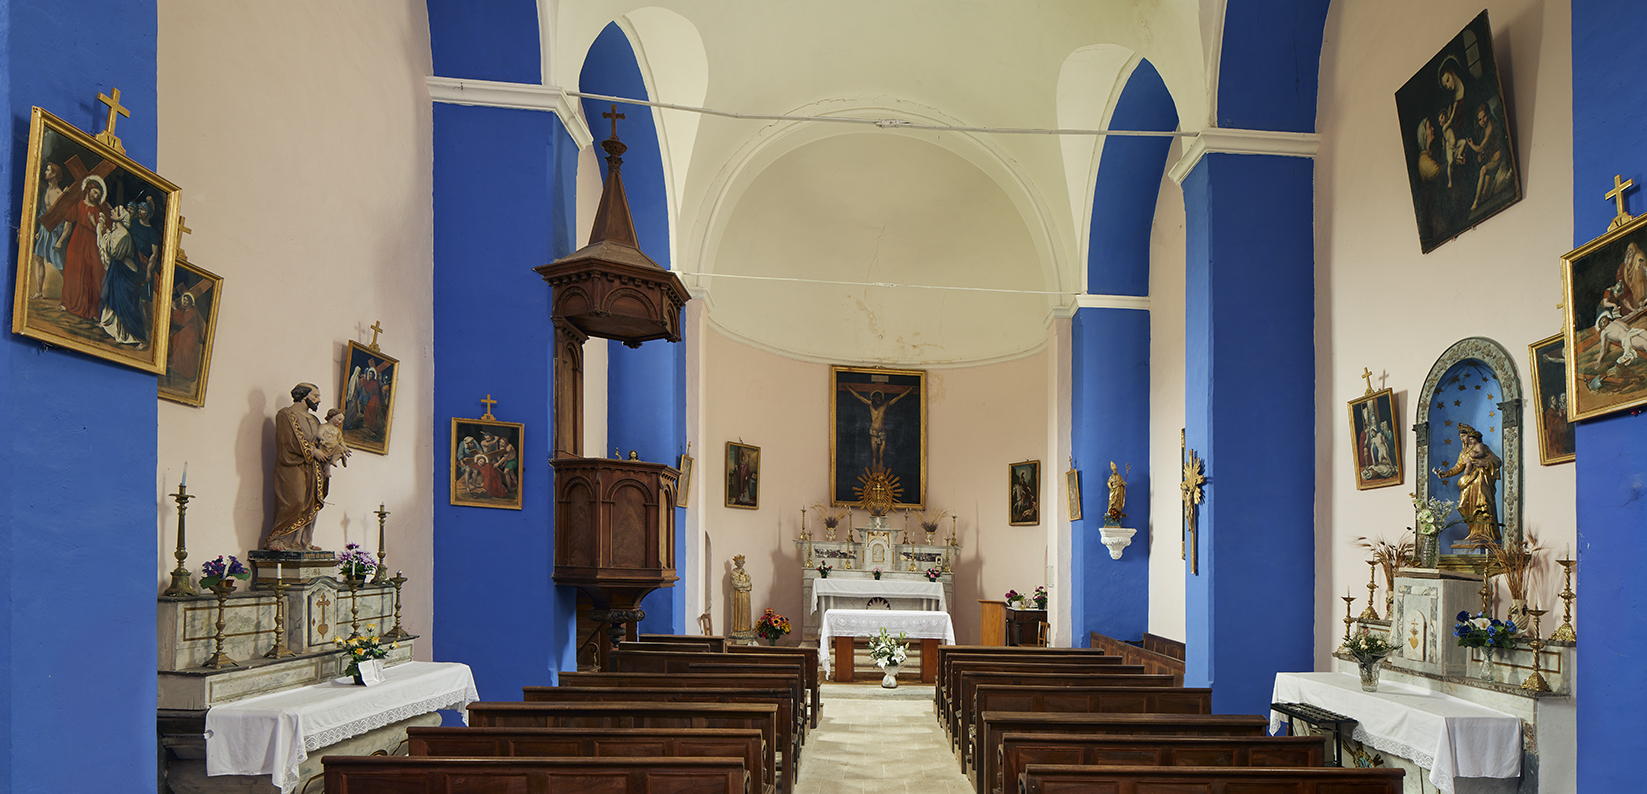 Le mobilier de l'église paroissiale Saint-Agricol